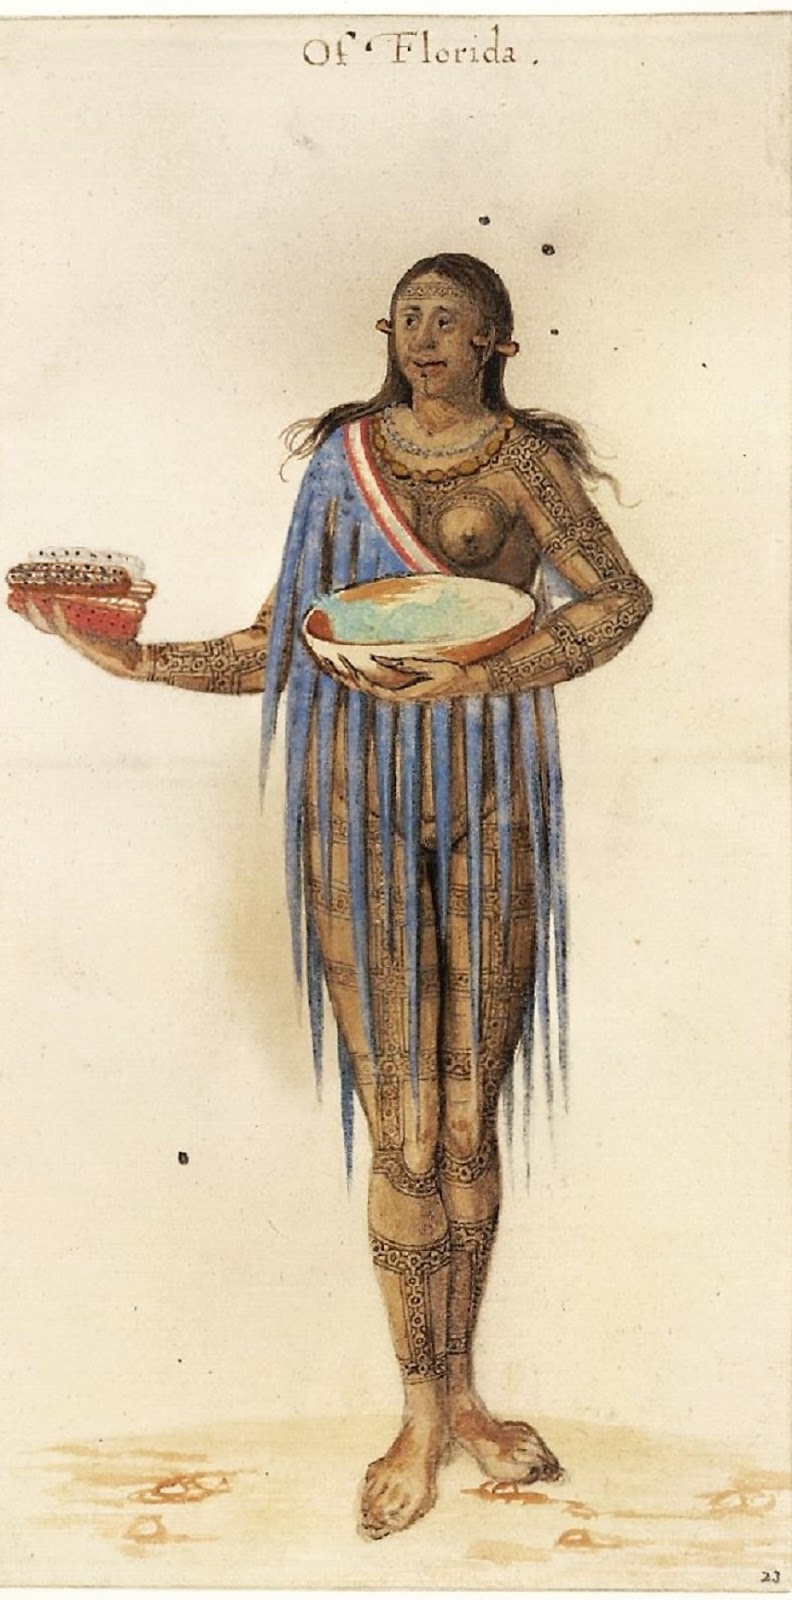 Algonquian woman bearing maize ears (watercolor by John White 1585-1586)